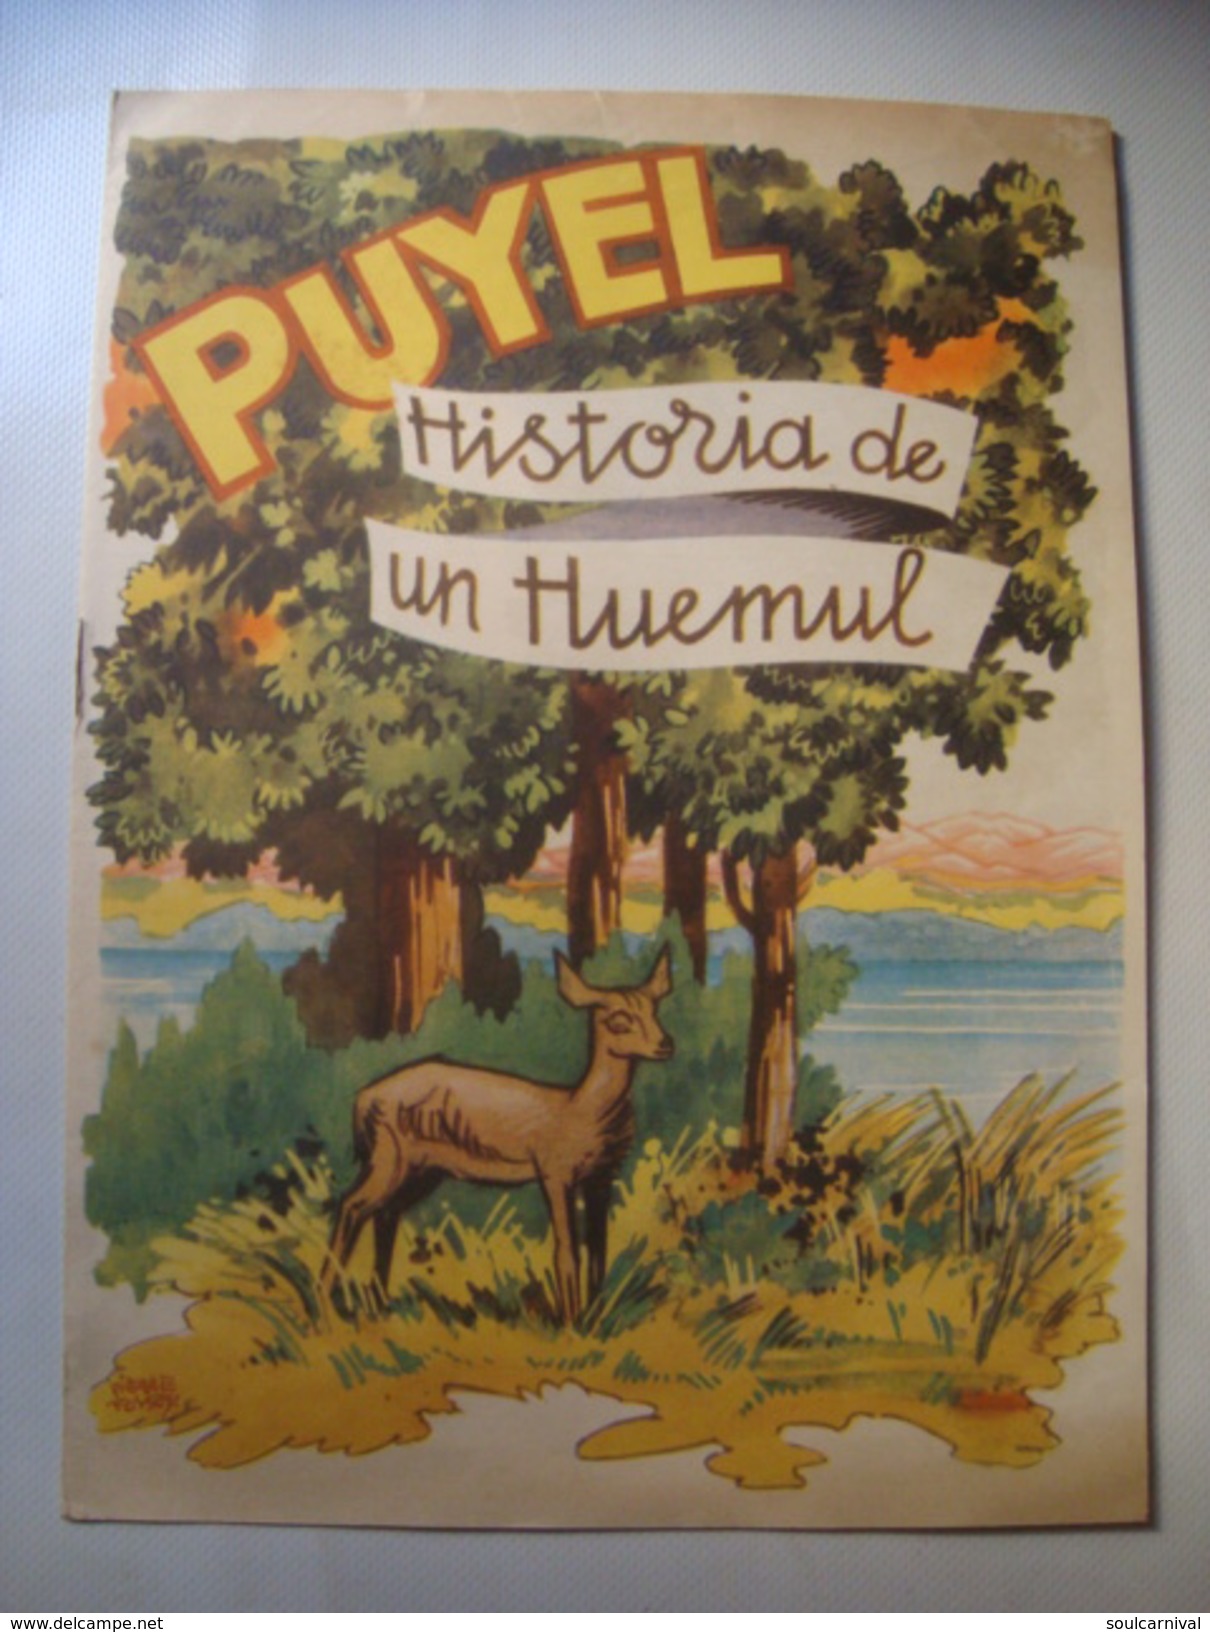 PUYEL. HISTORIA DE UN HUEMUL - ARGENTINA, DIRECCION DE TURISMO Y PARQUES, 1950 APROX. BY PIERRE FOSSEY. - Juniors